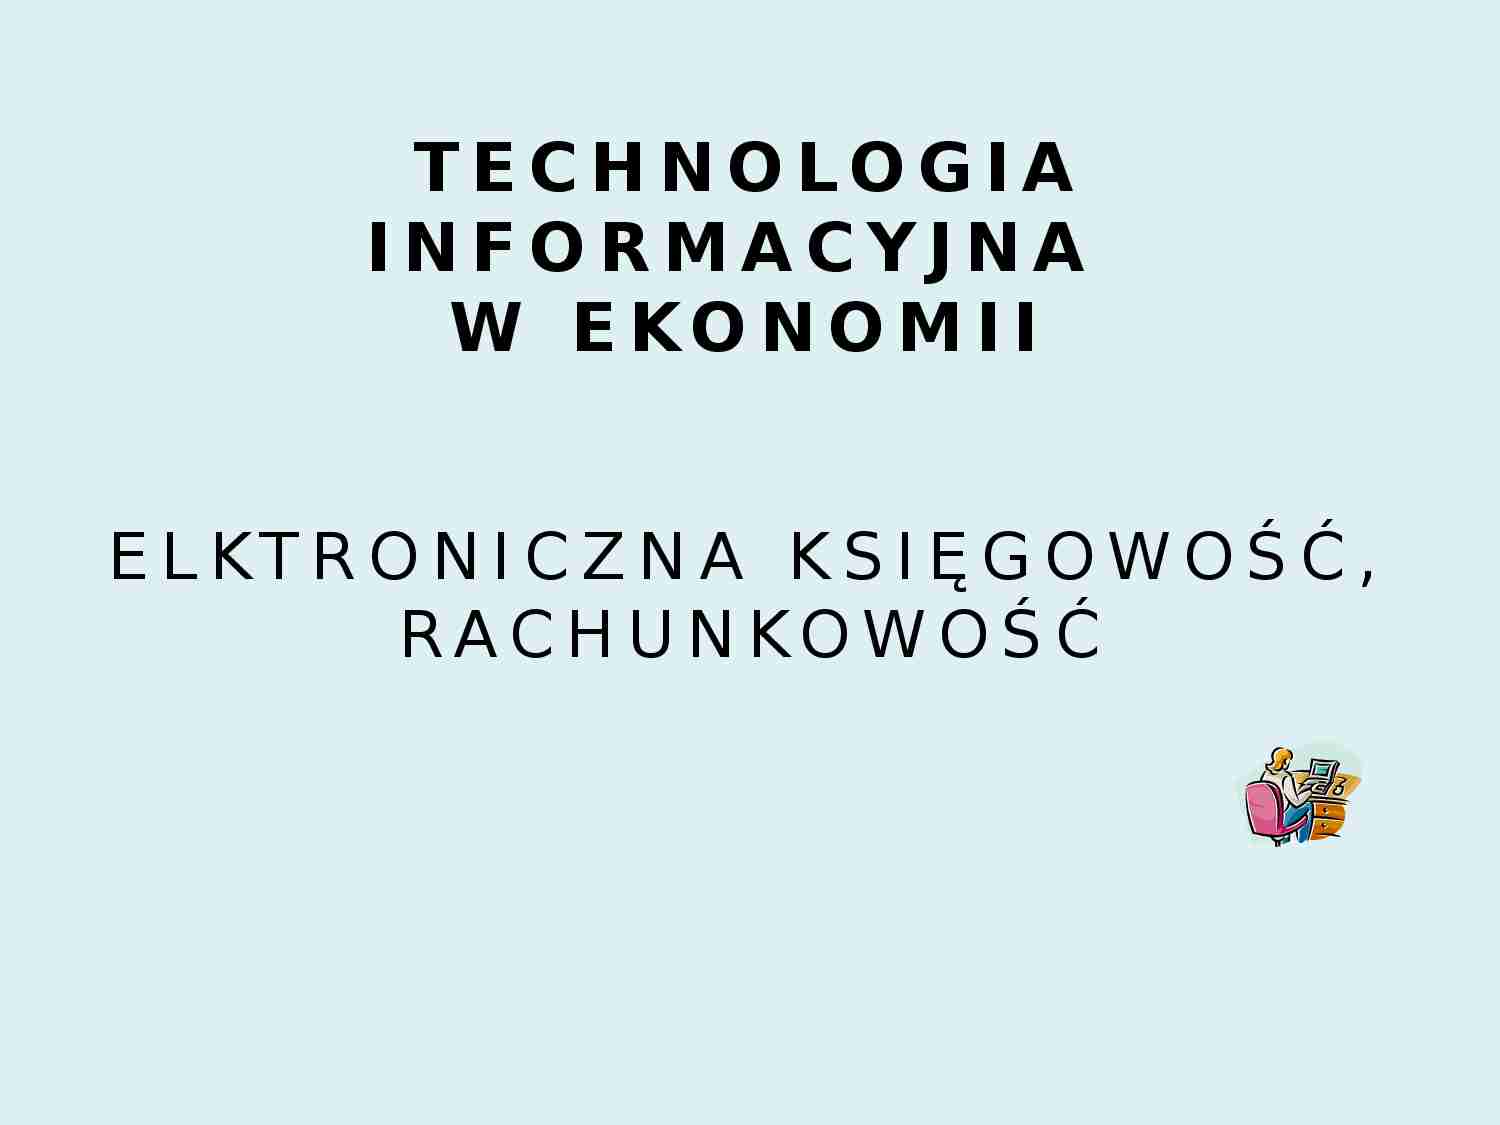 Technologia informacyjna w ekonomii - prezentacja - strona 1